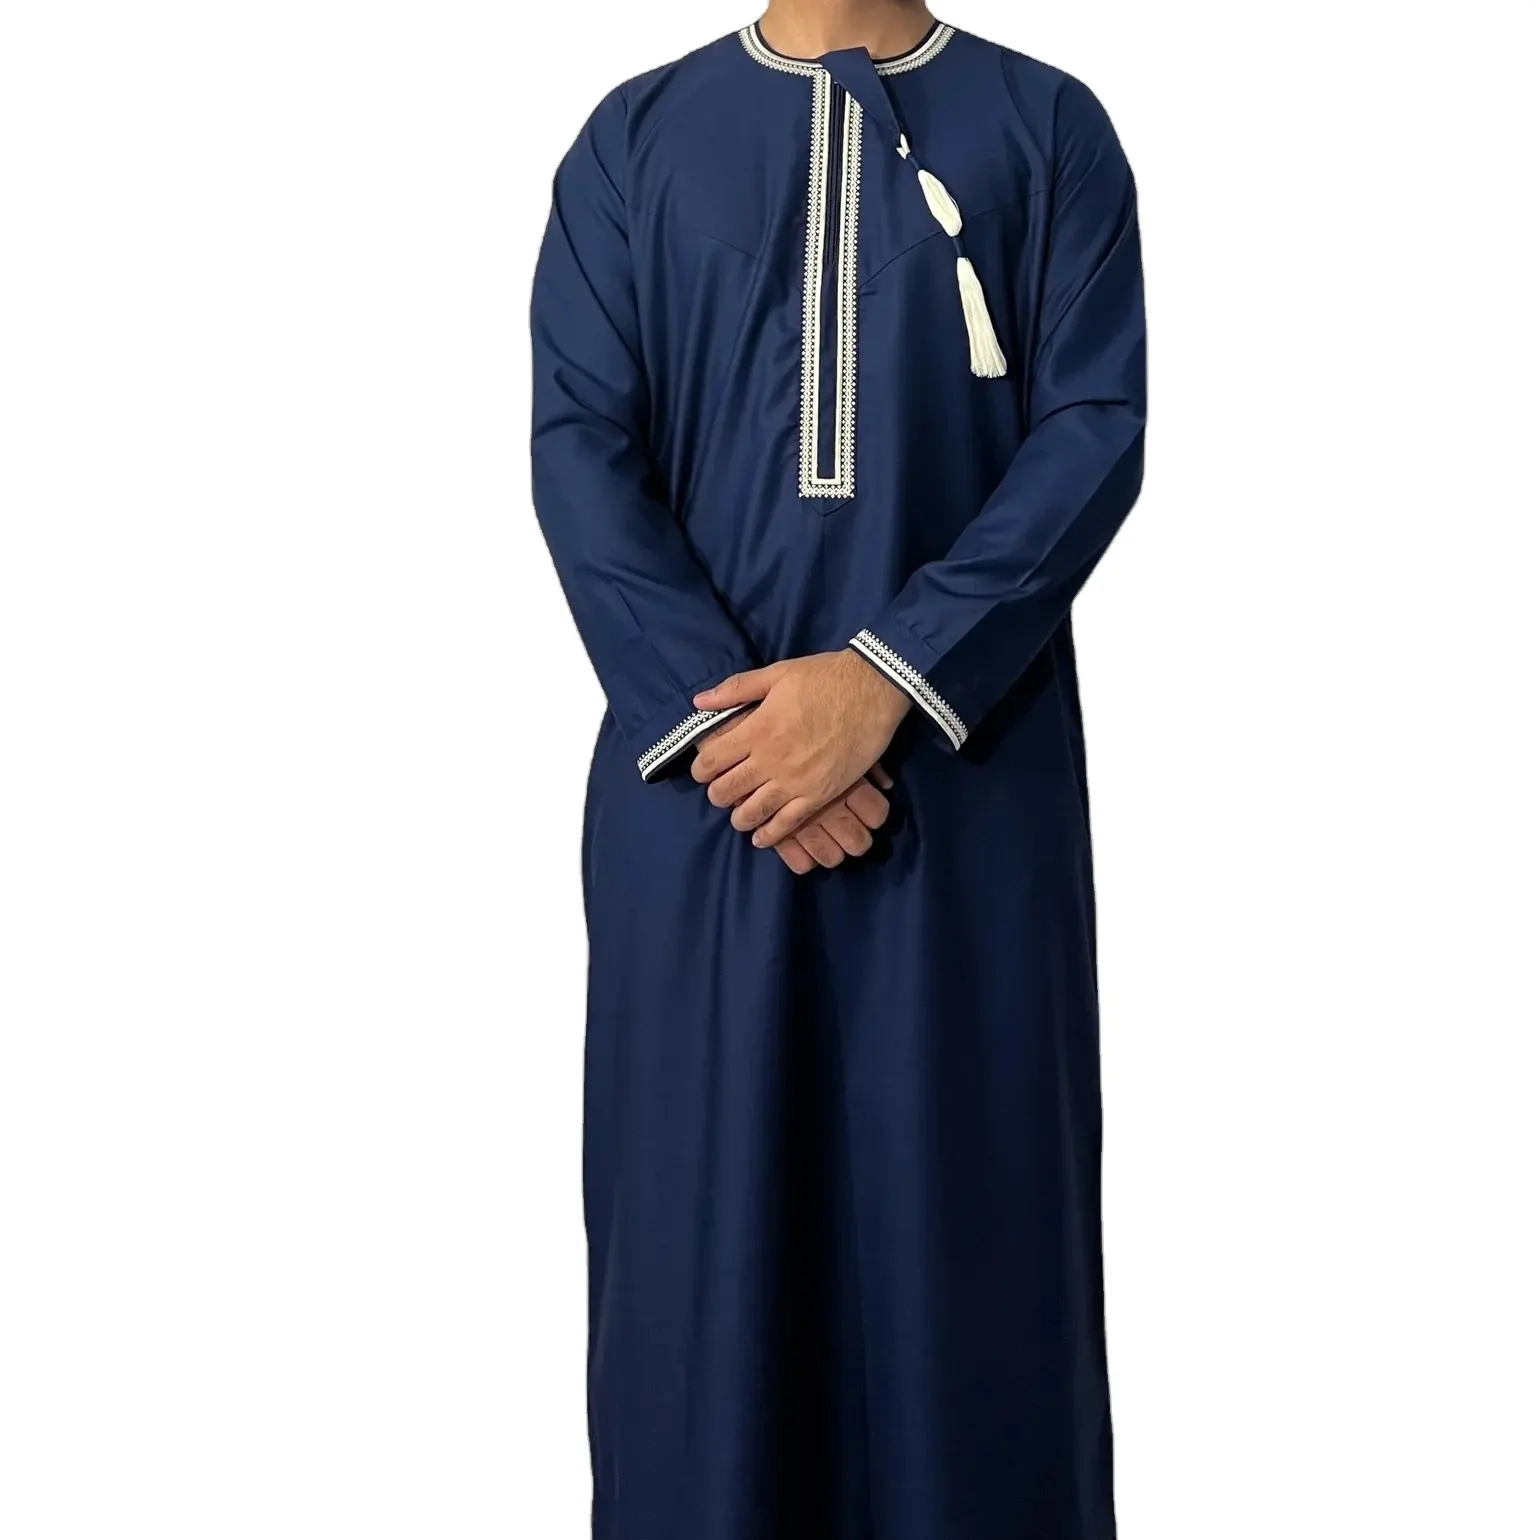 Produk baru 100% poliester kain Thobe Saudi poliester 280gsm kain jubah Abaya mengkilap Jubbah pria warna biru tussle kustom